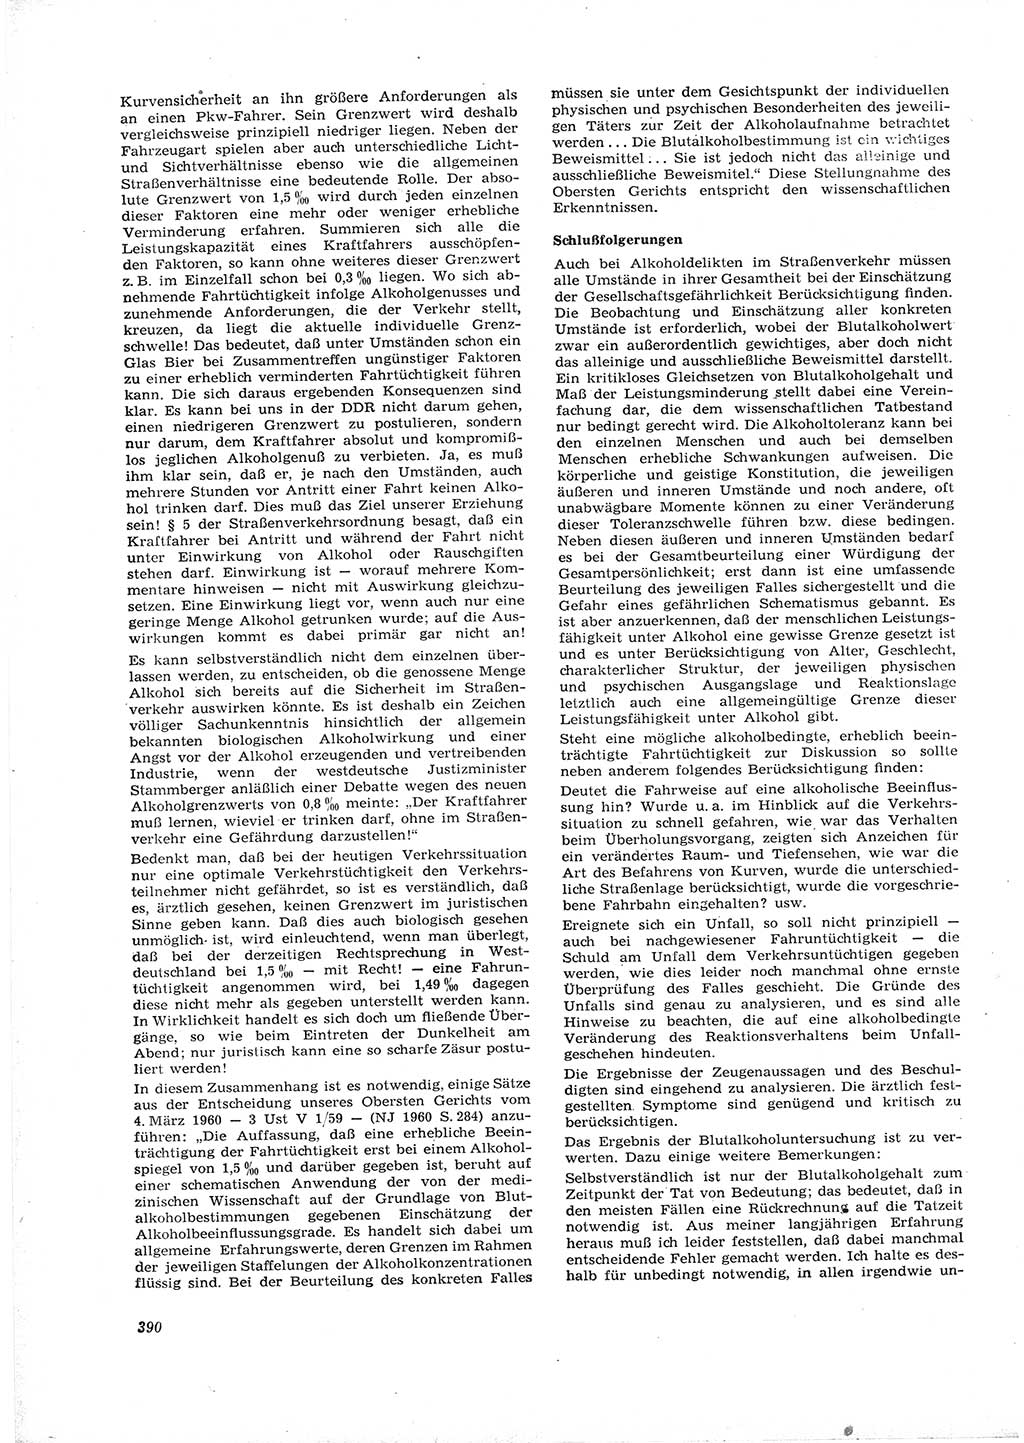 Neue Justiz (NJ), Zeitschrift für Recht und Rechtswissenschaft [Deutsche Demokratische Republik (DDR)], 16. Jahrgang 1962, Seite 390 (NJ DDR 1962, S. 390)